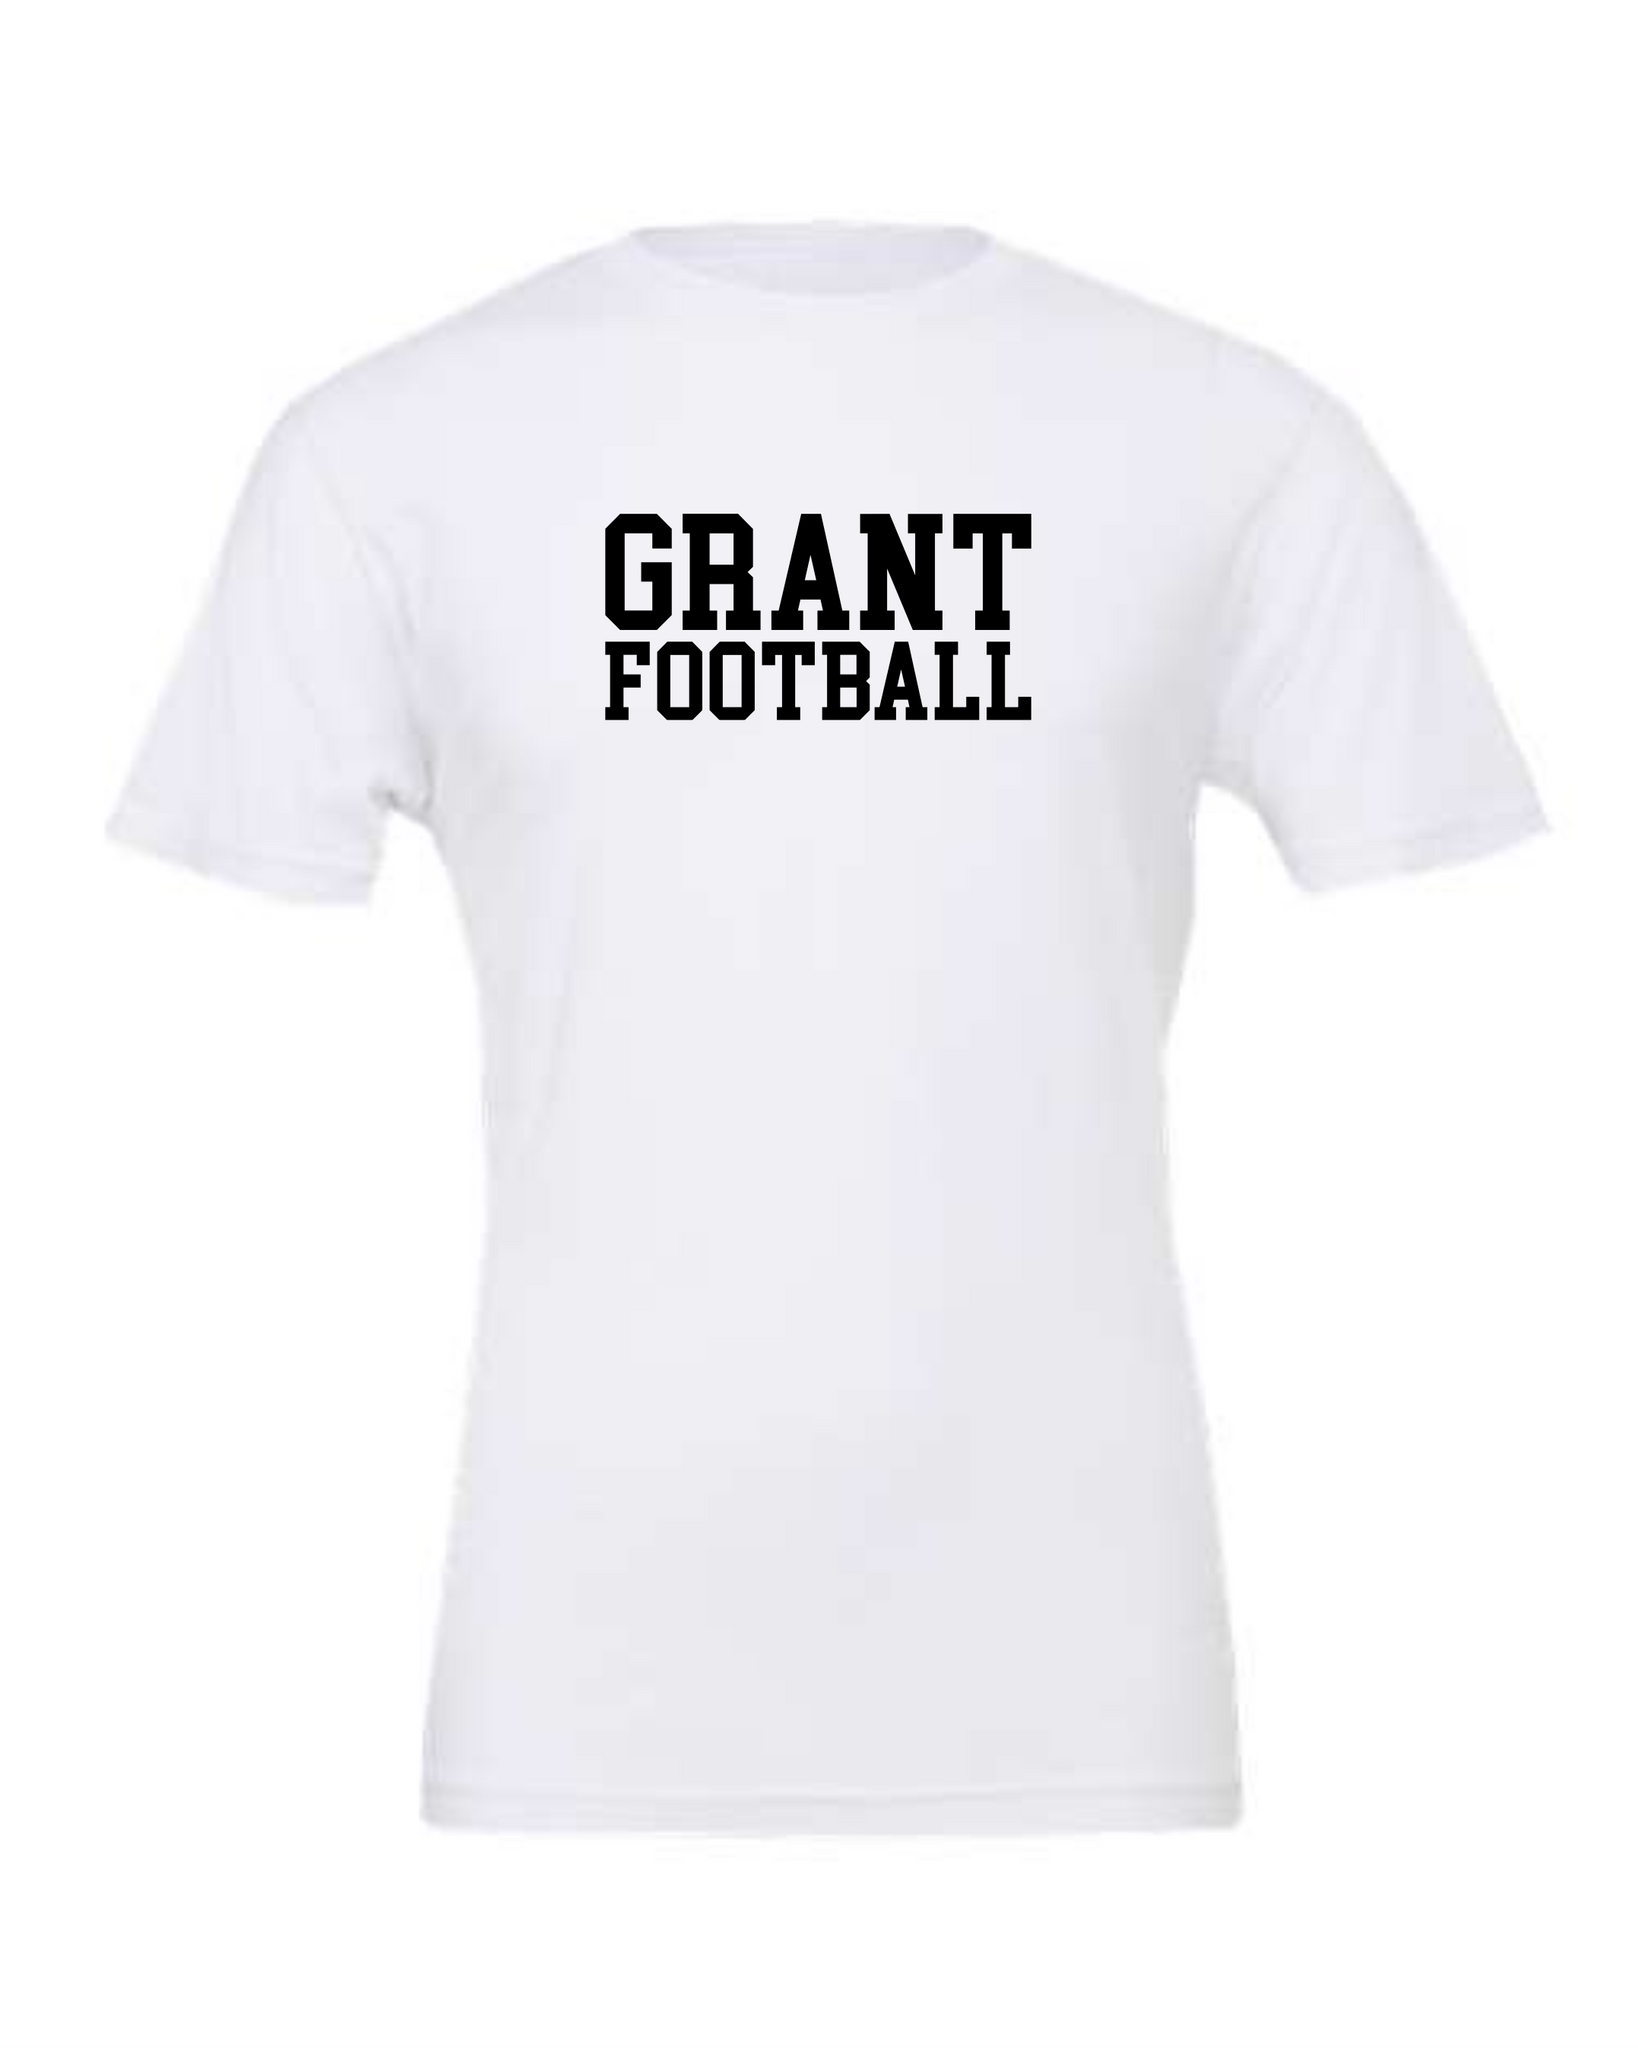 Grant Football Block Letter Shirt